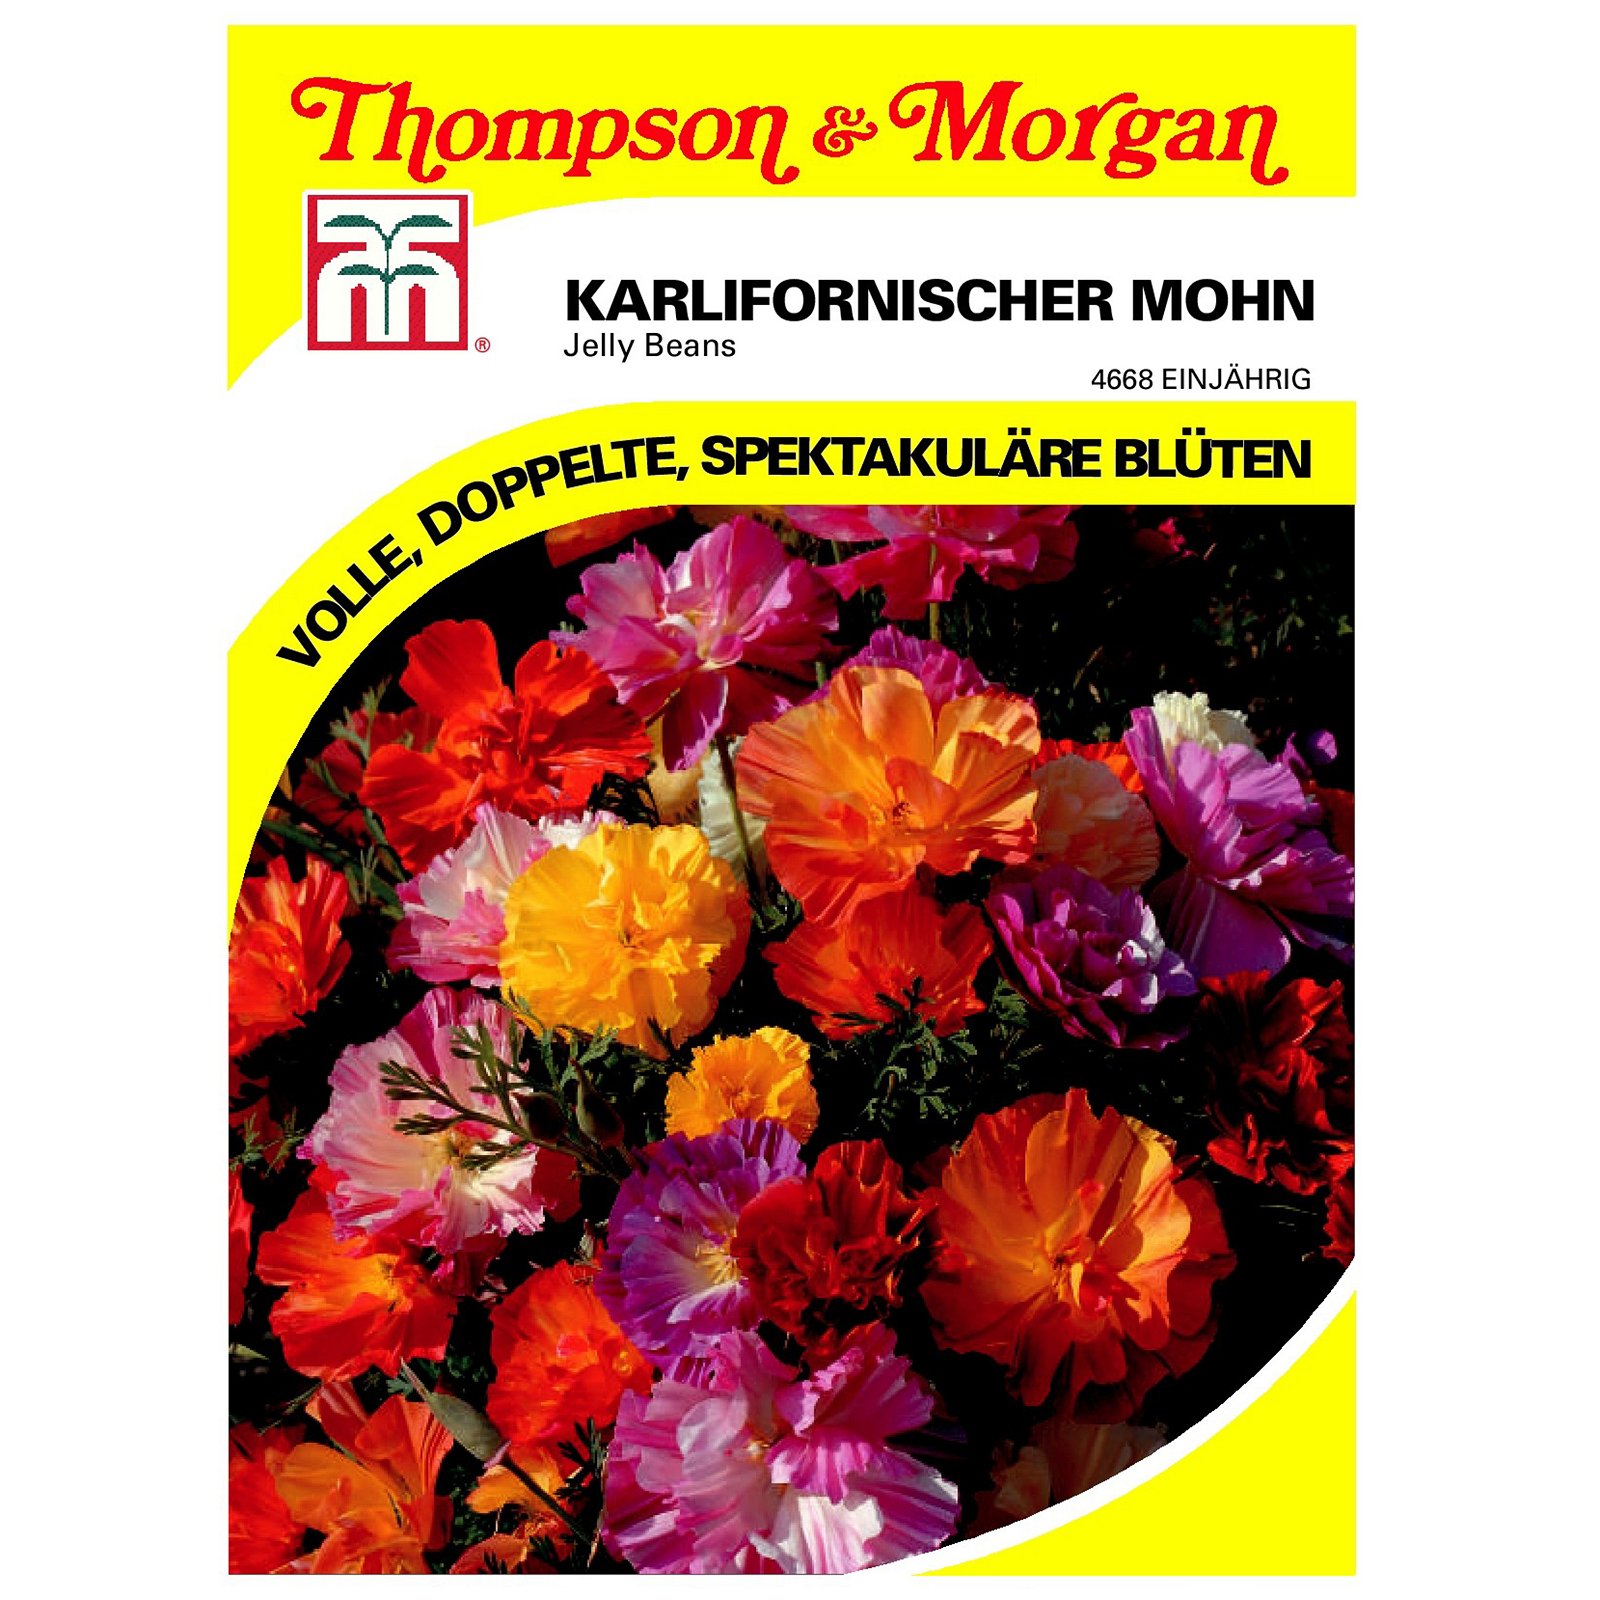 Thompson & Morgan Kalifornischer Mohn 'Jelly Beans'